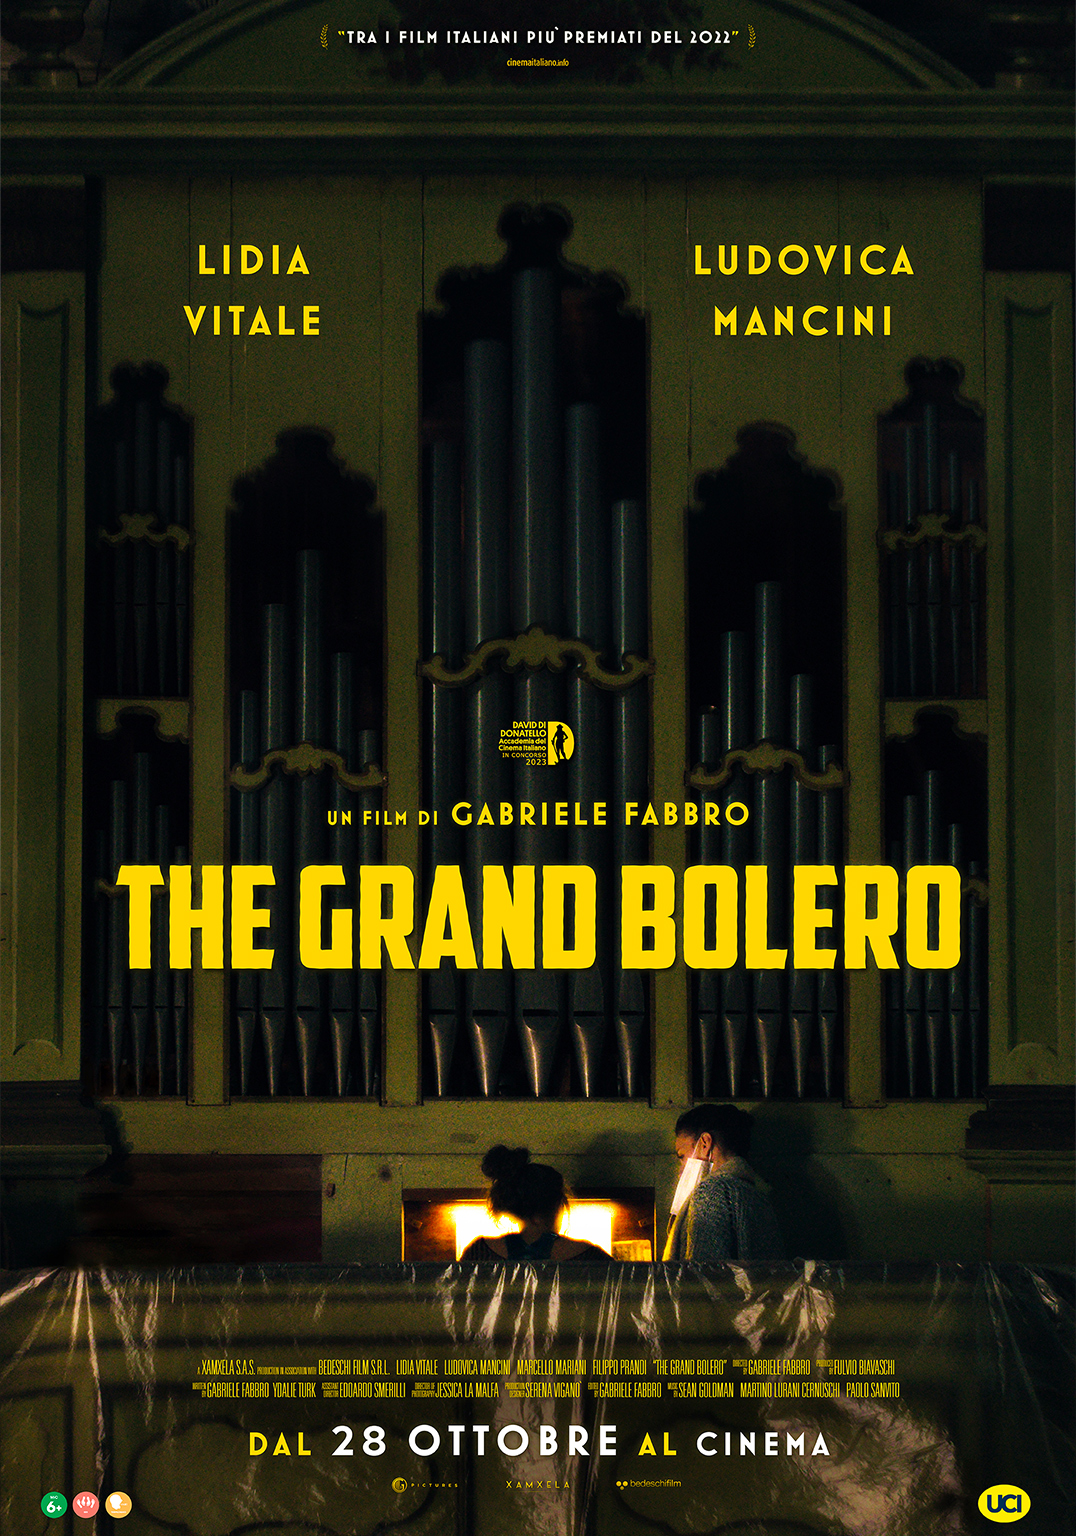 THE GRAND BOLERO